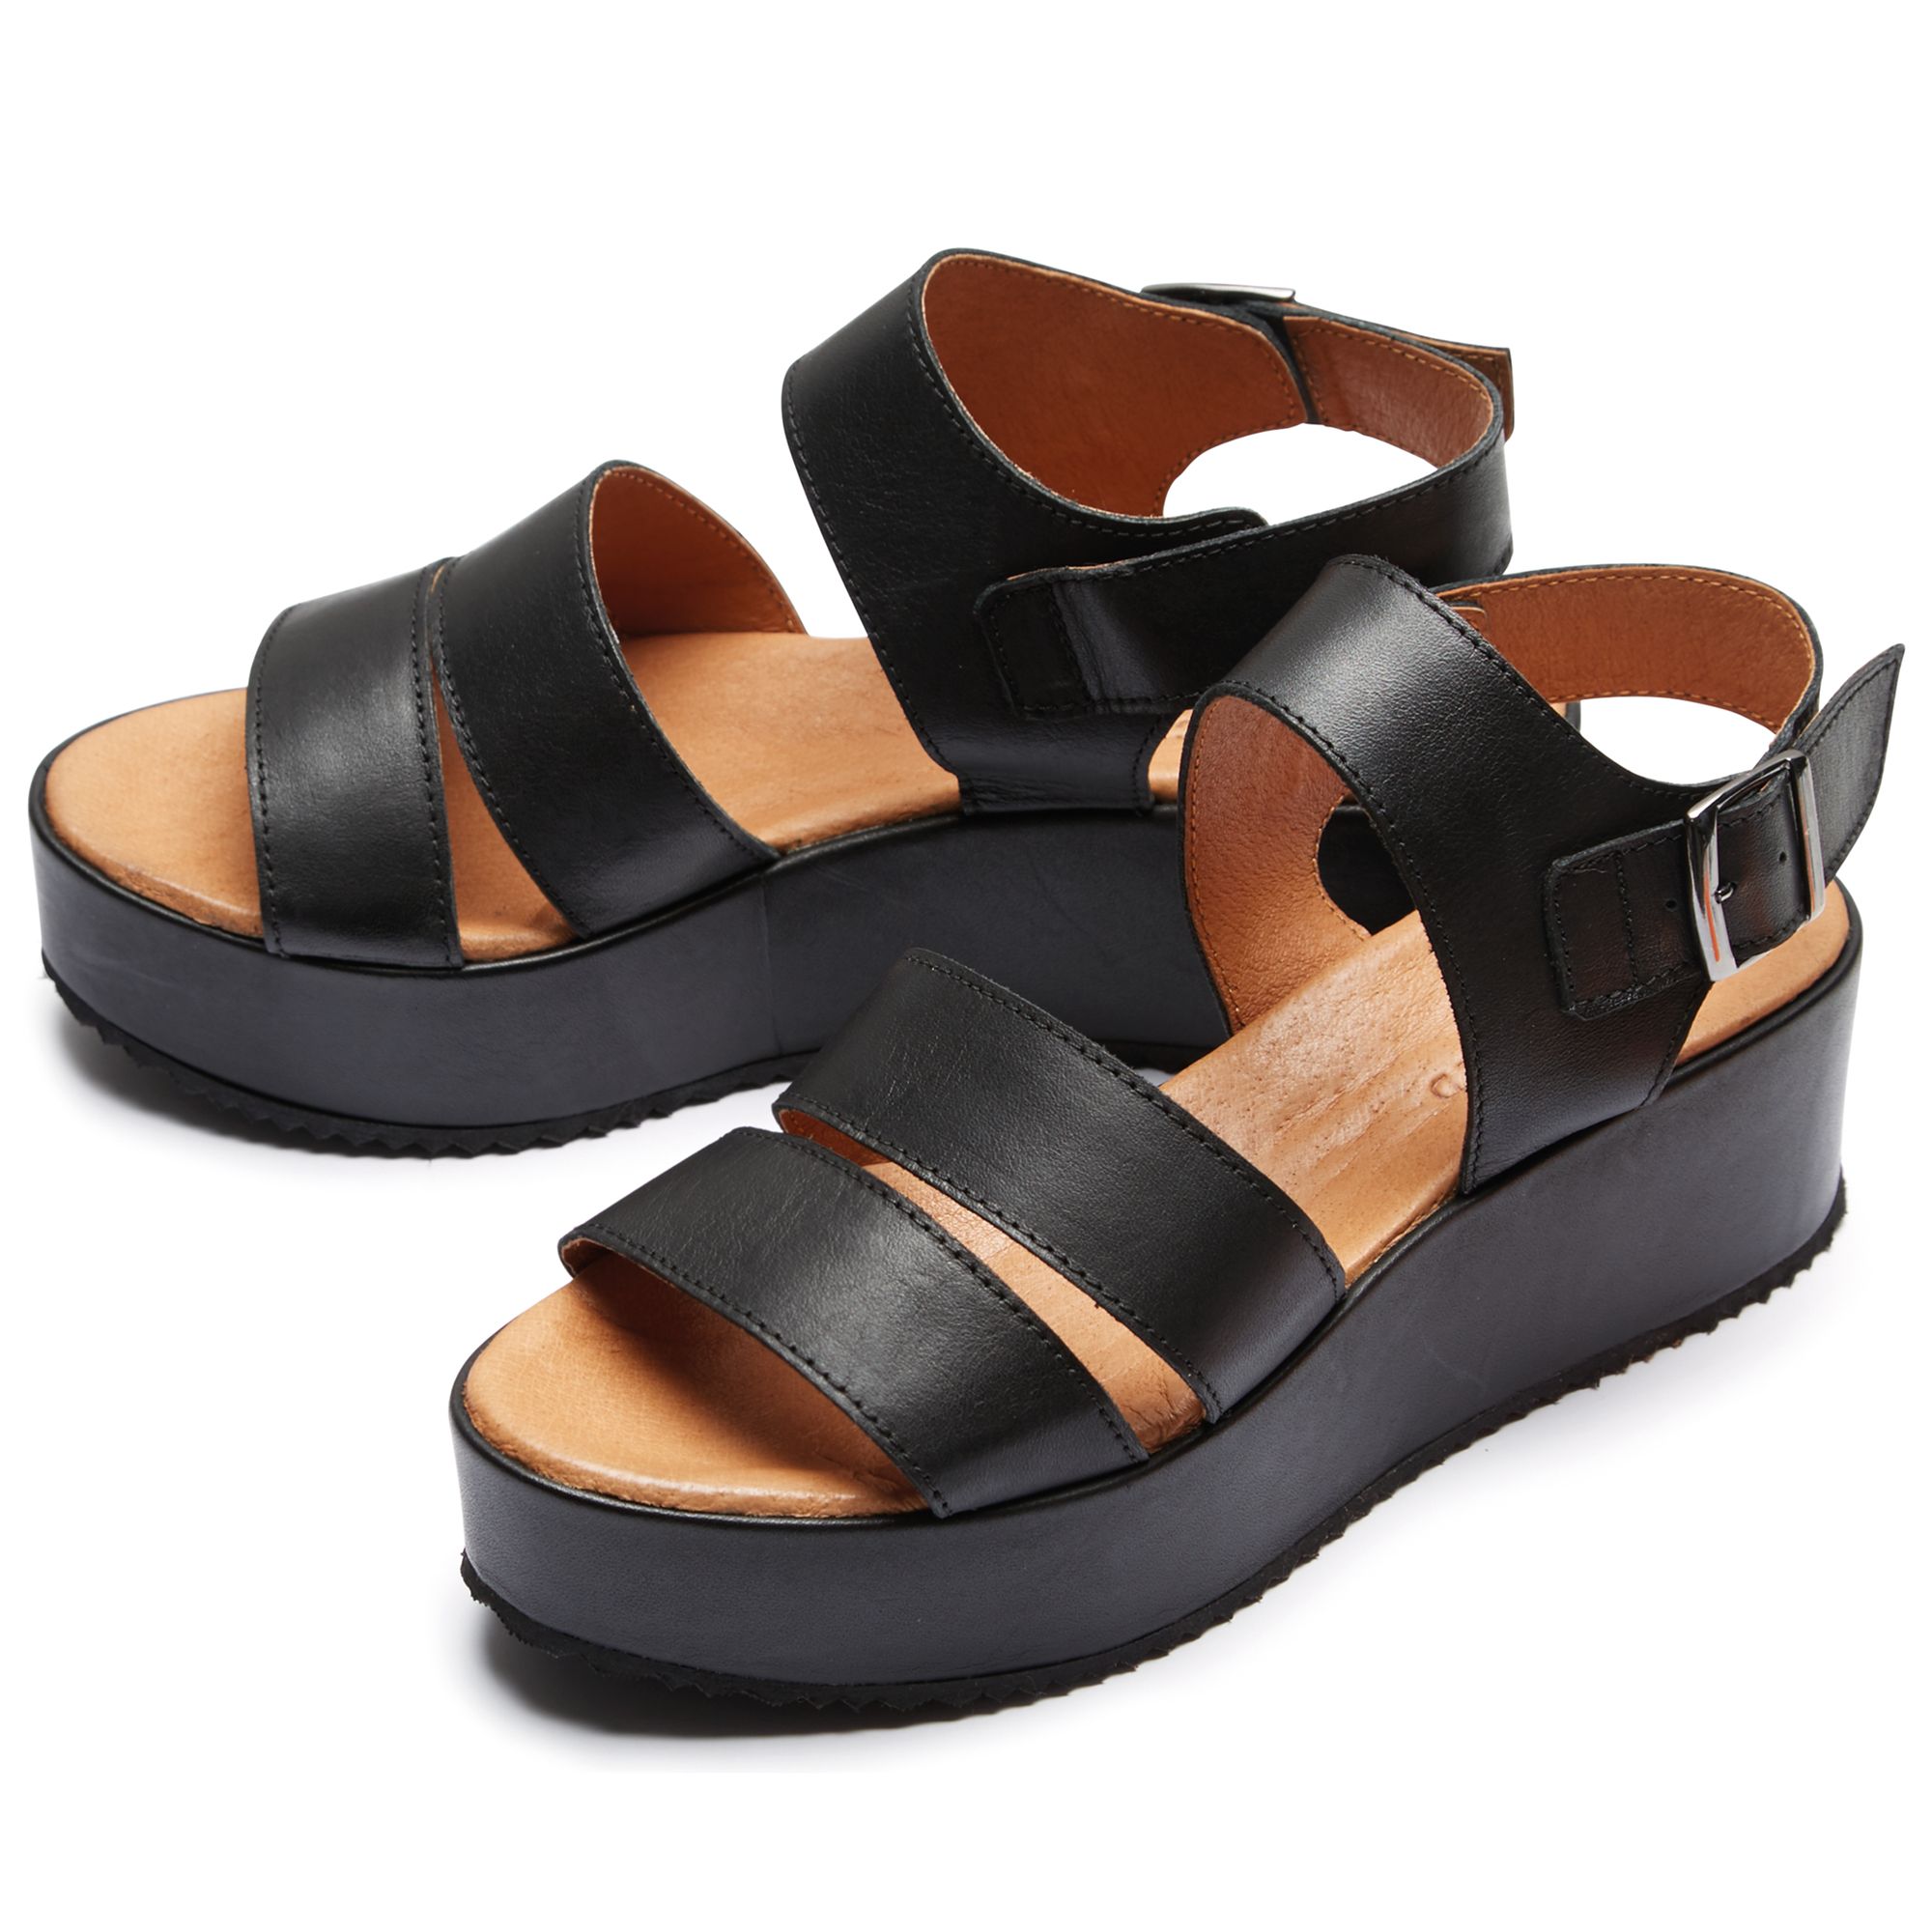 Selected Femme Dani Leather Wedge Heeled Platform Sandals, Black